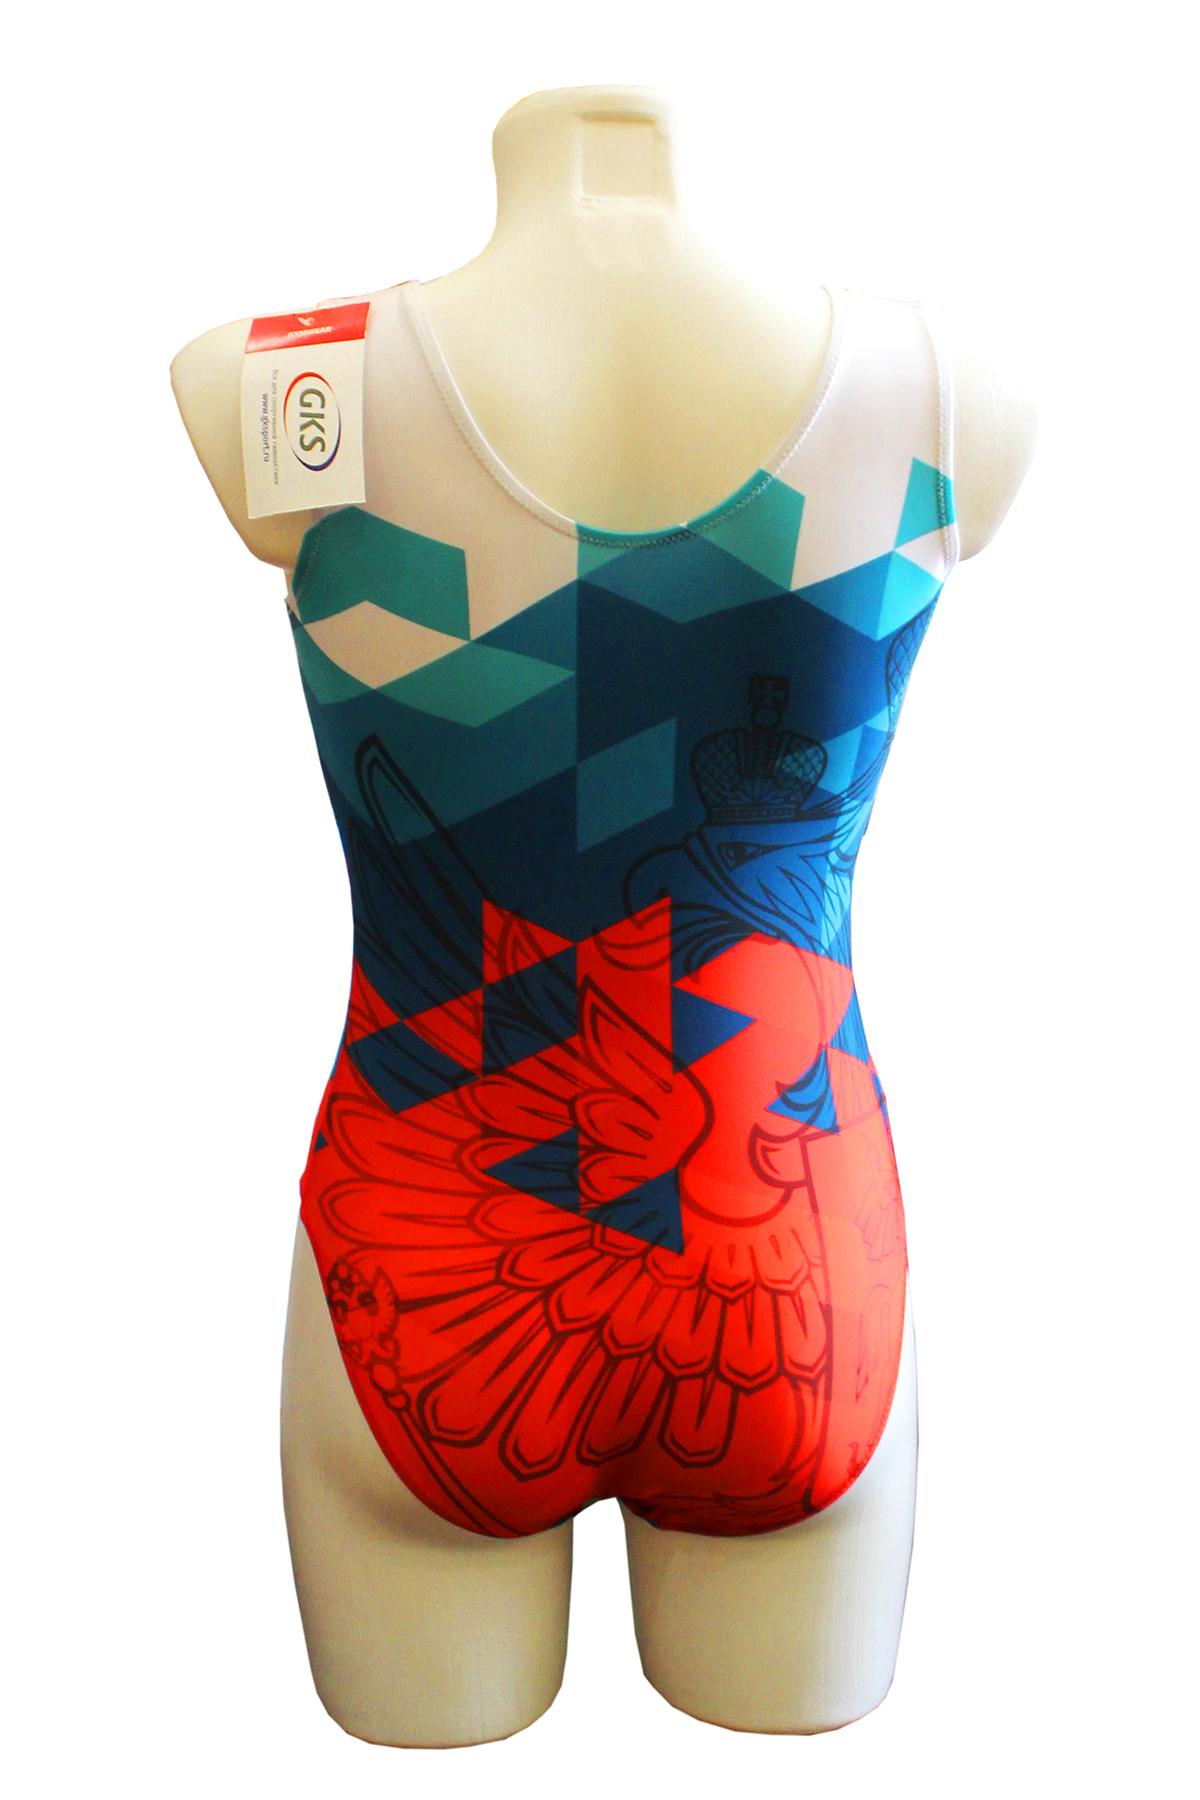 Купальник женский для спортивной гимнастики GK Sport 202-21 оранжево-сине-белый без рукава